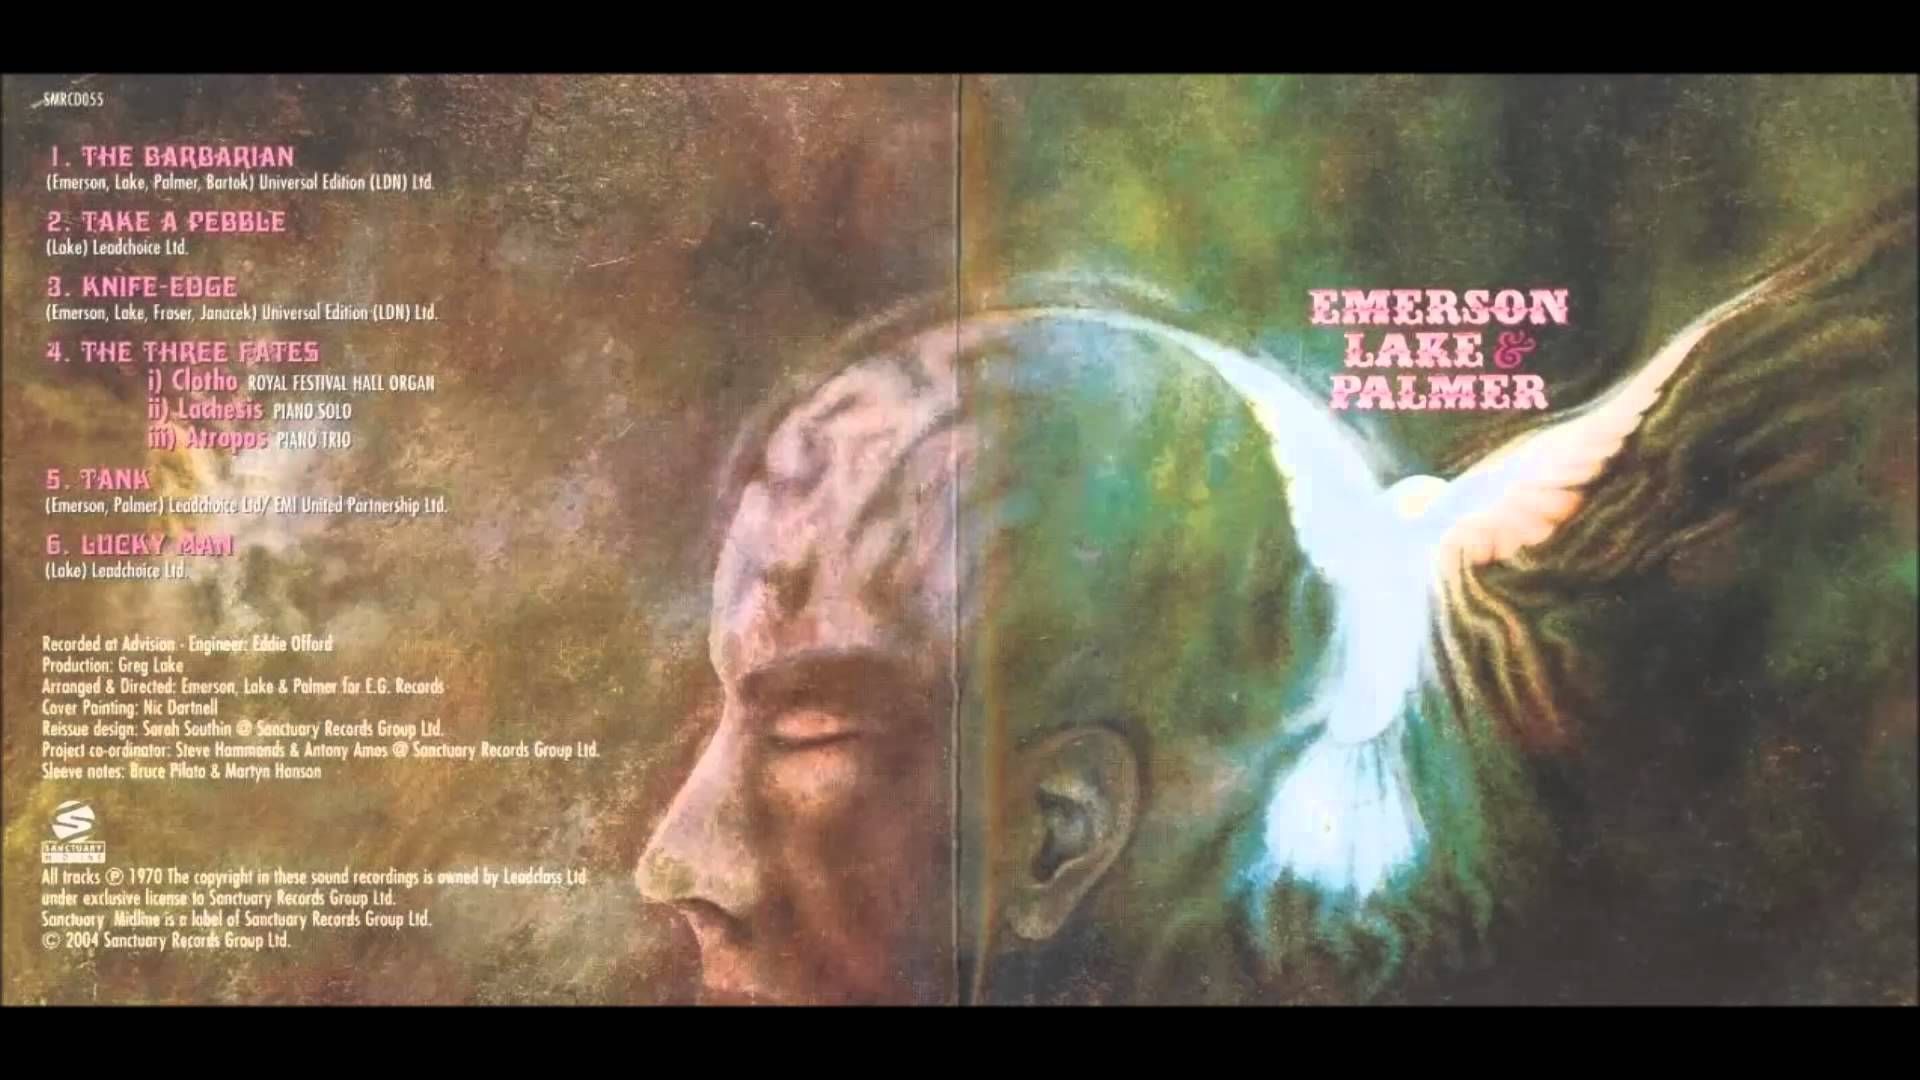 Emerson, Lake & Palmer Wallpapers